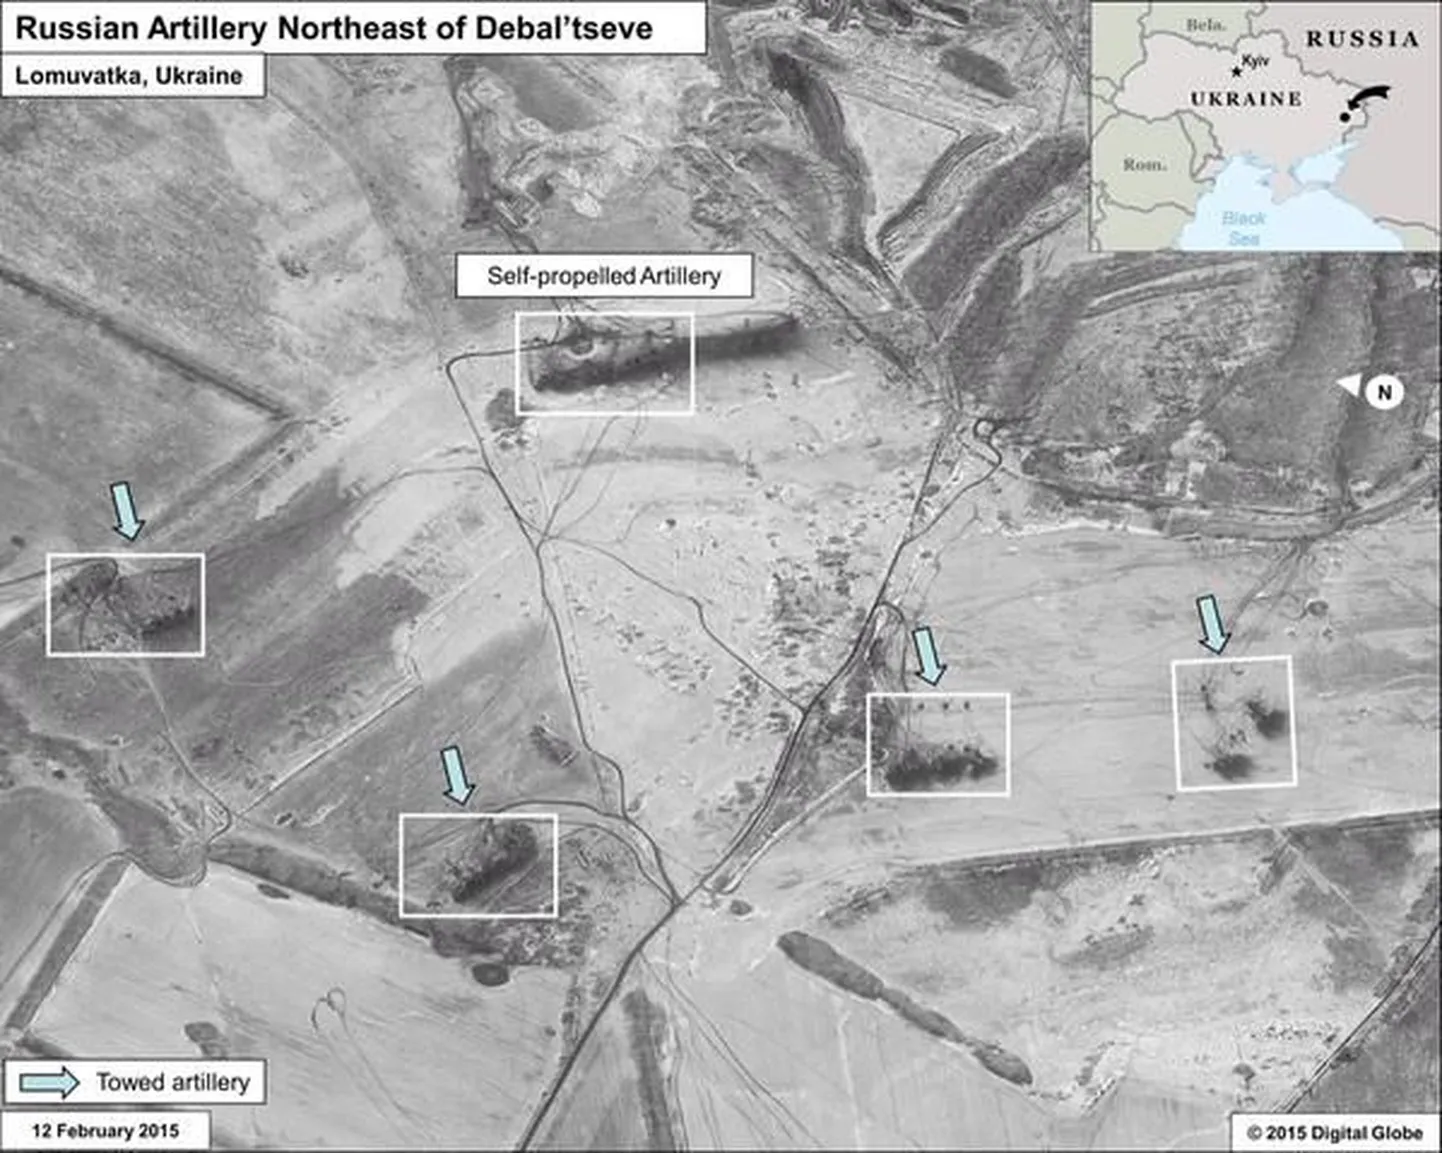 По словам посла США Джеффри Пайетта эти снимки являются доказательством расположения российских ракетных установок под Дебальцево.